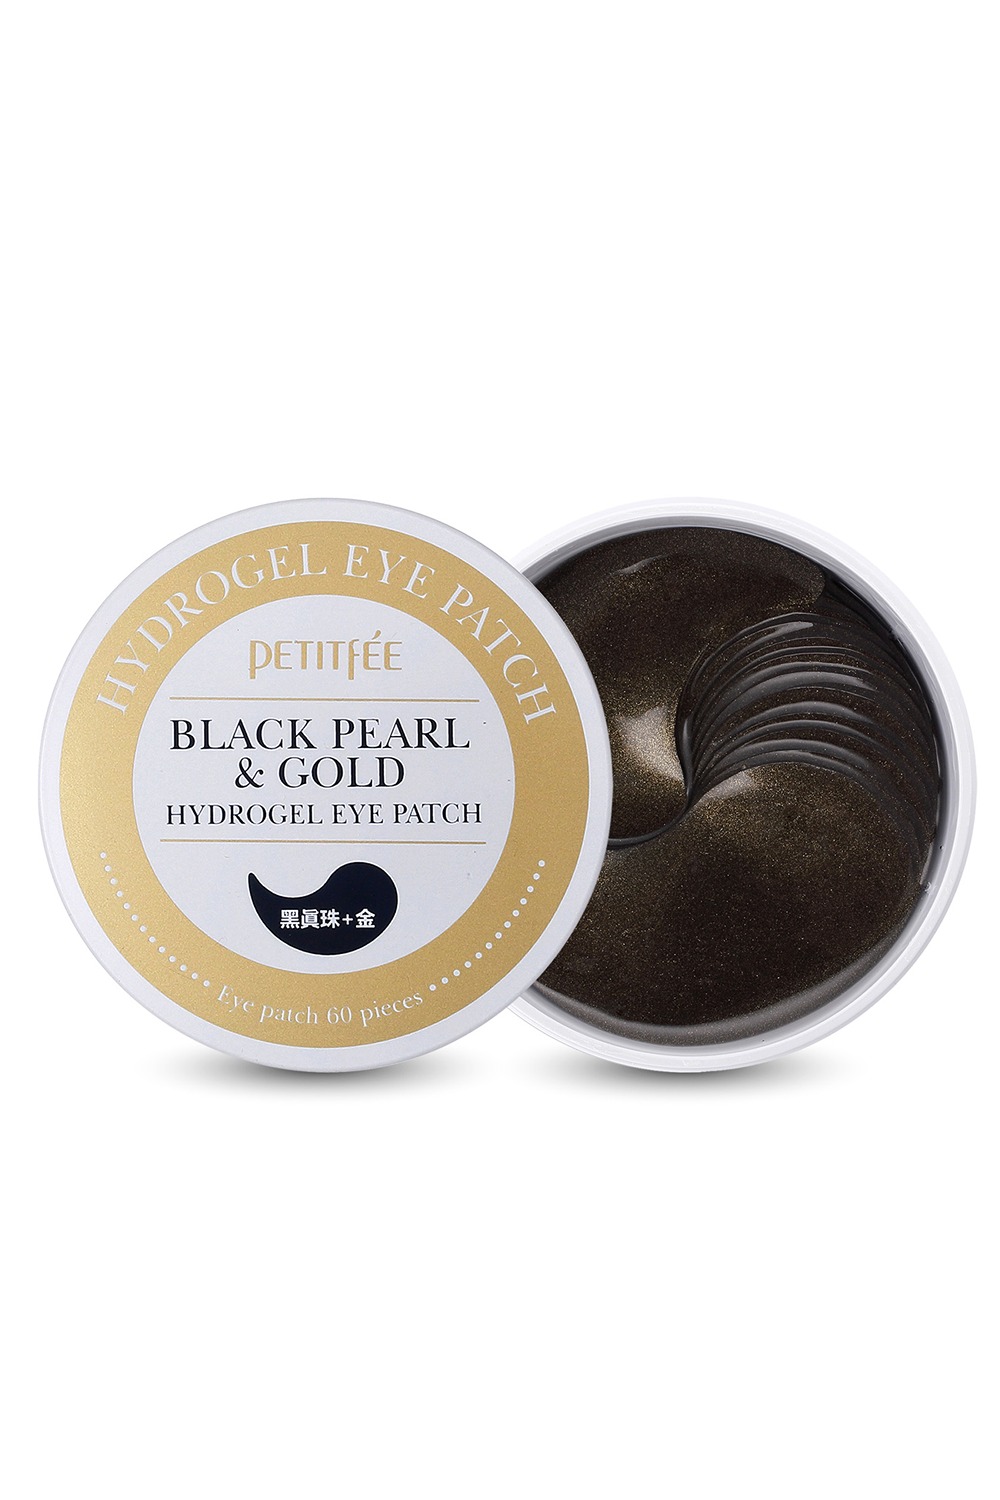 Petitfée Black Pearl & Gold Hydrogel Eye Patch